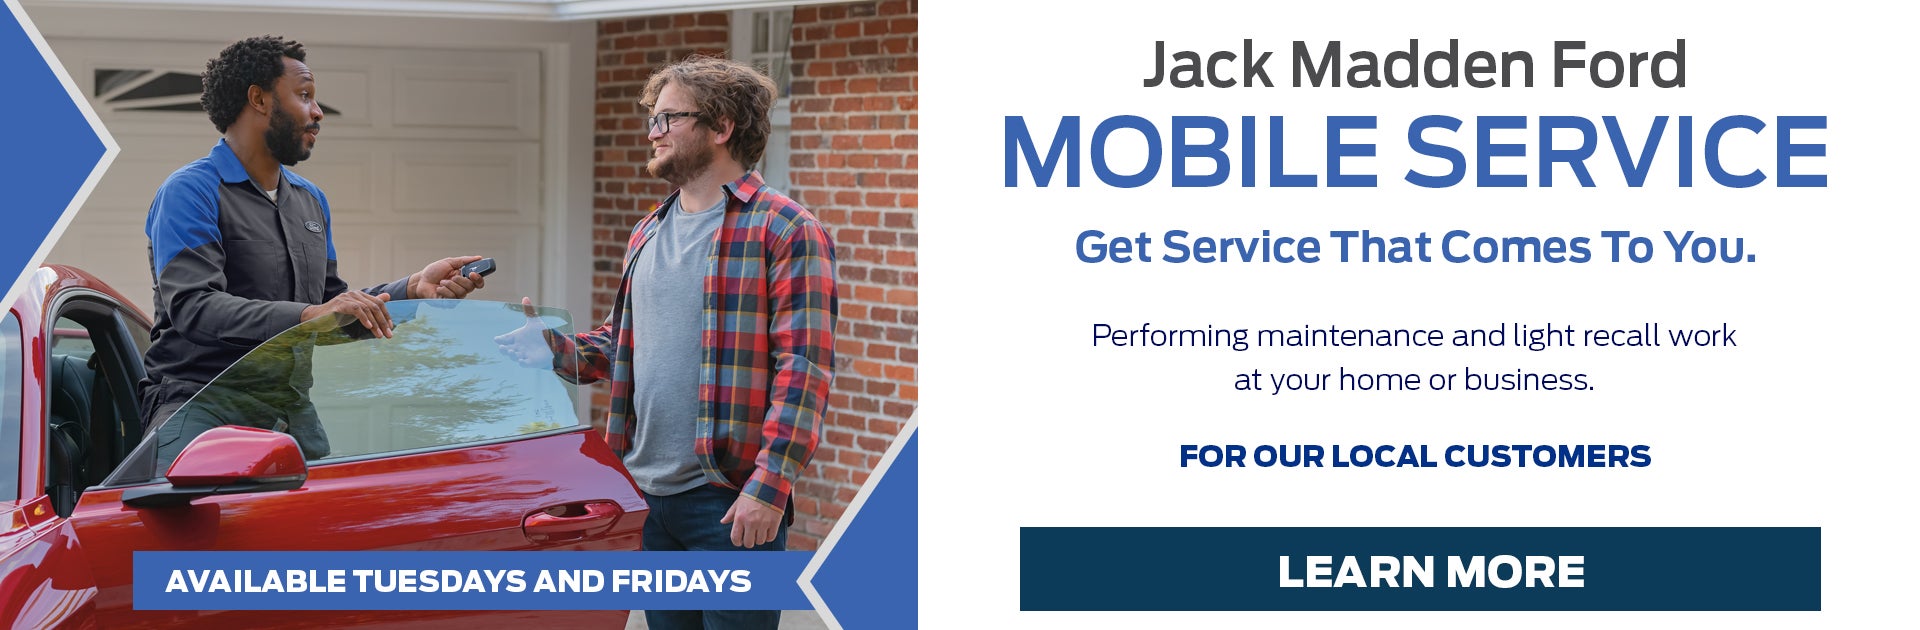 Jack Madden Ford Mobile Service